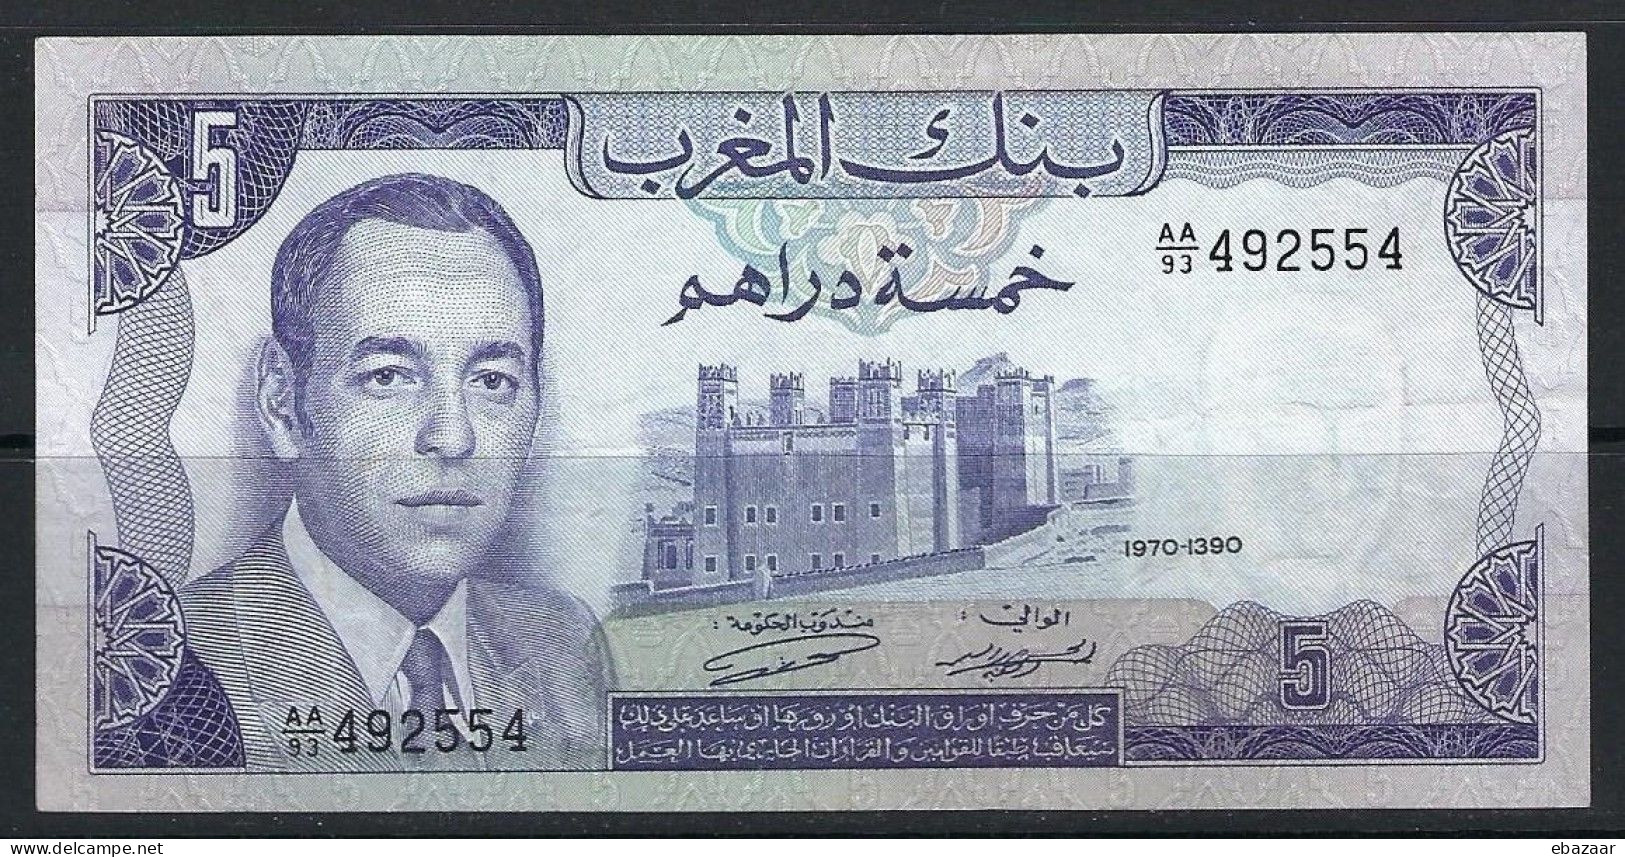 Morocco 1970 Banque Du Maroc 5 Dirhams Banknote P-56a VF++ Crisp - Maroc